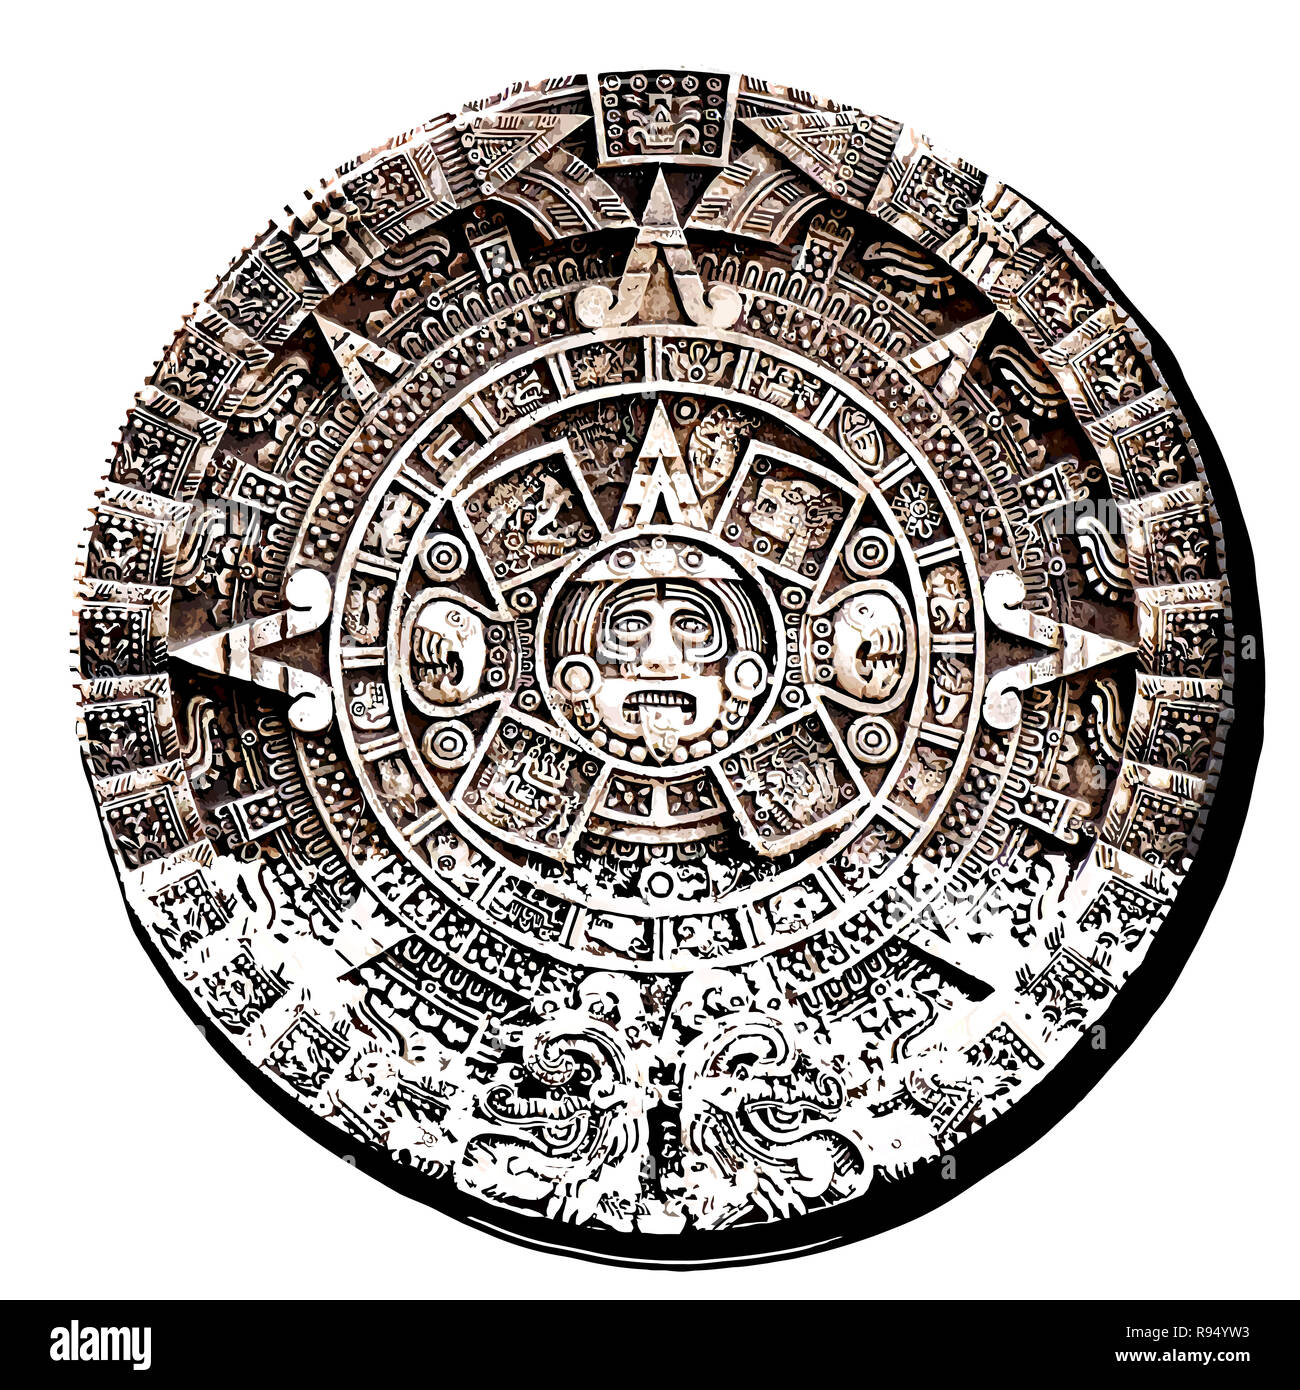 Сюжет и композиция календарь майя. Календарь Майя вектор. Ацтекский календарь астрономия. Календарь ацтеков вектор. Конец календаря Майя.